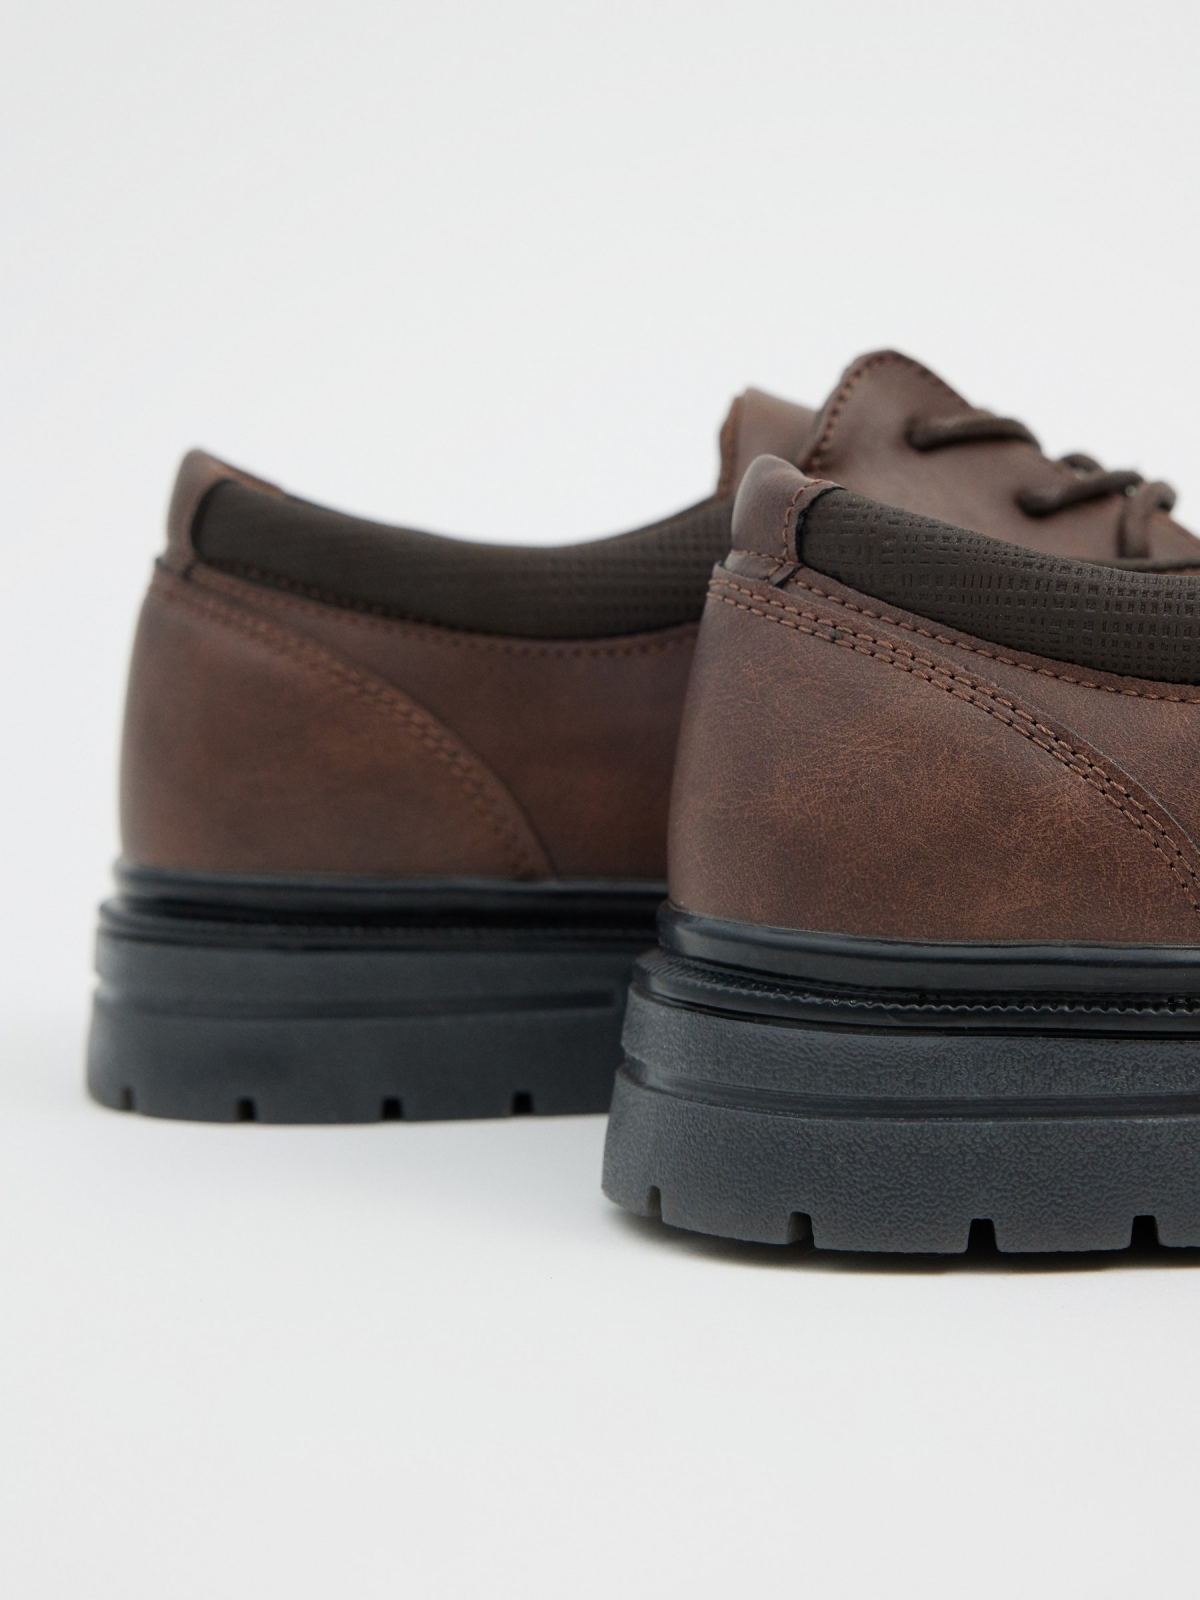 Sapato marrom efeito de couro marrom escuro vista detalhe